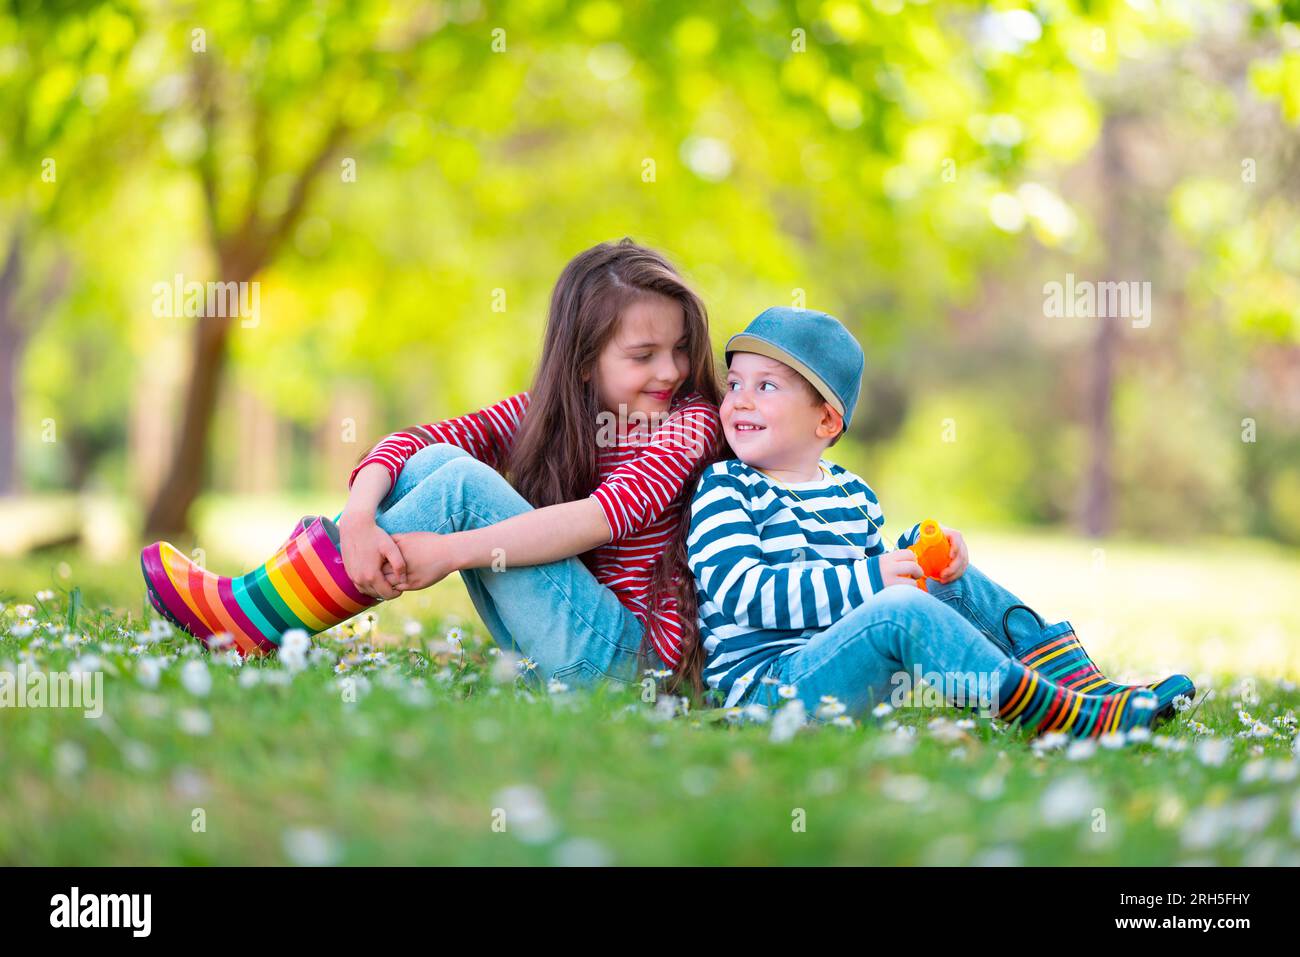 Fröhliche Kinder Junge und Mädchen in Gummistiefeln spielen draußen im grünen Park mit blühenden Blüten Stockfoto